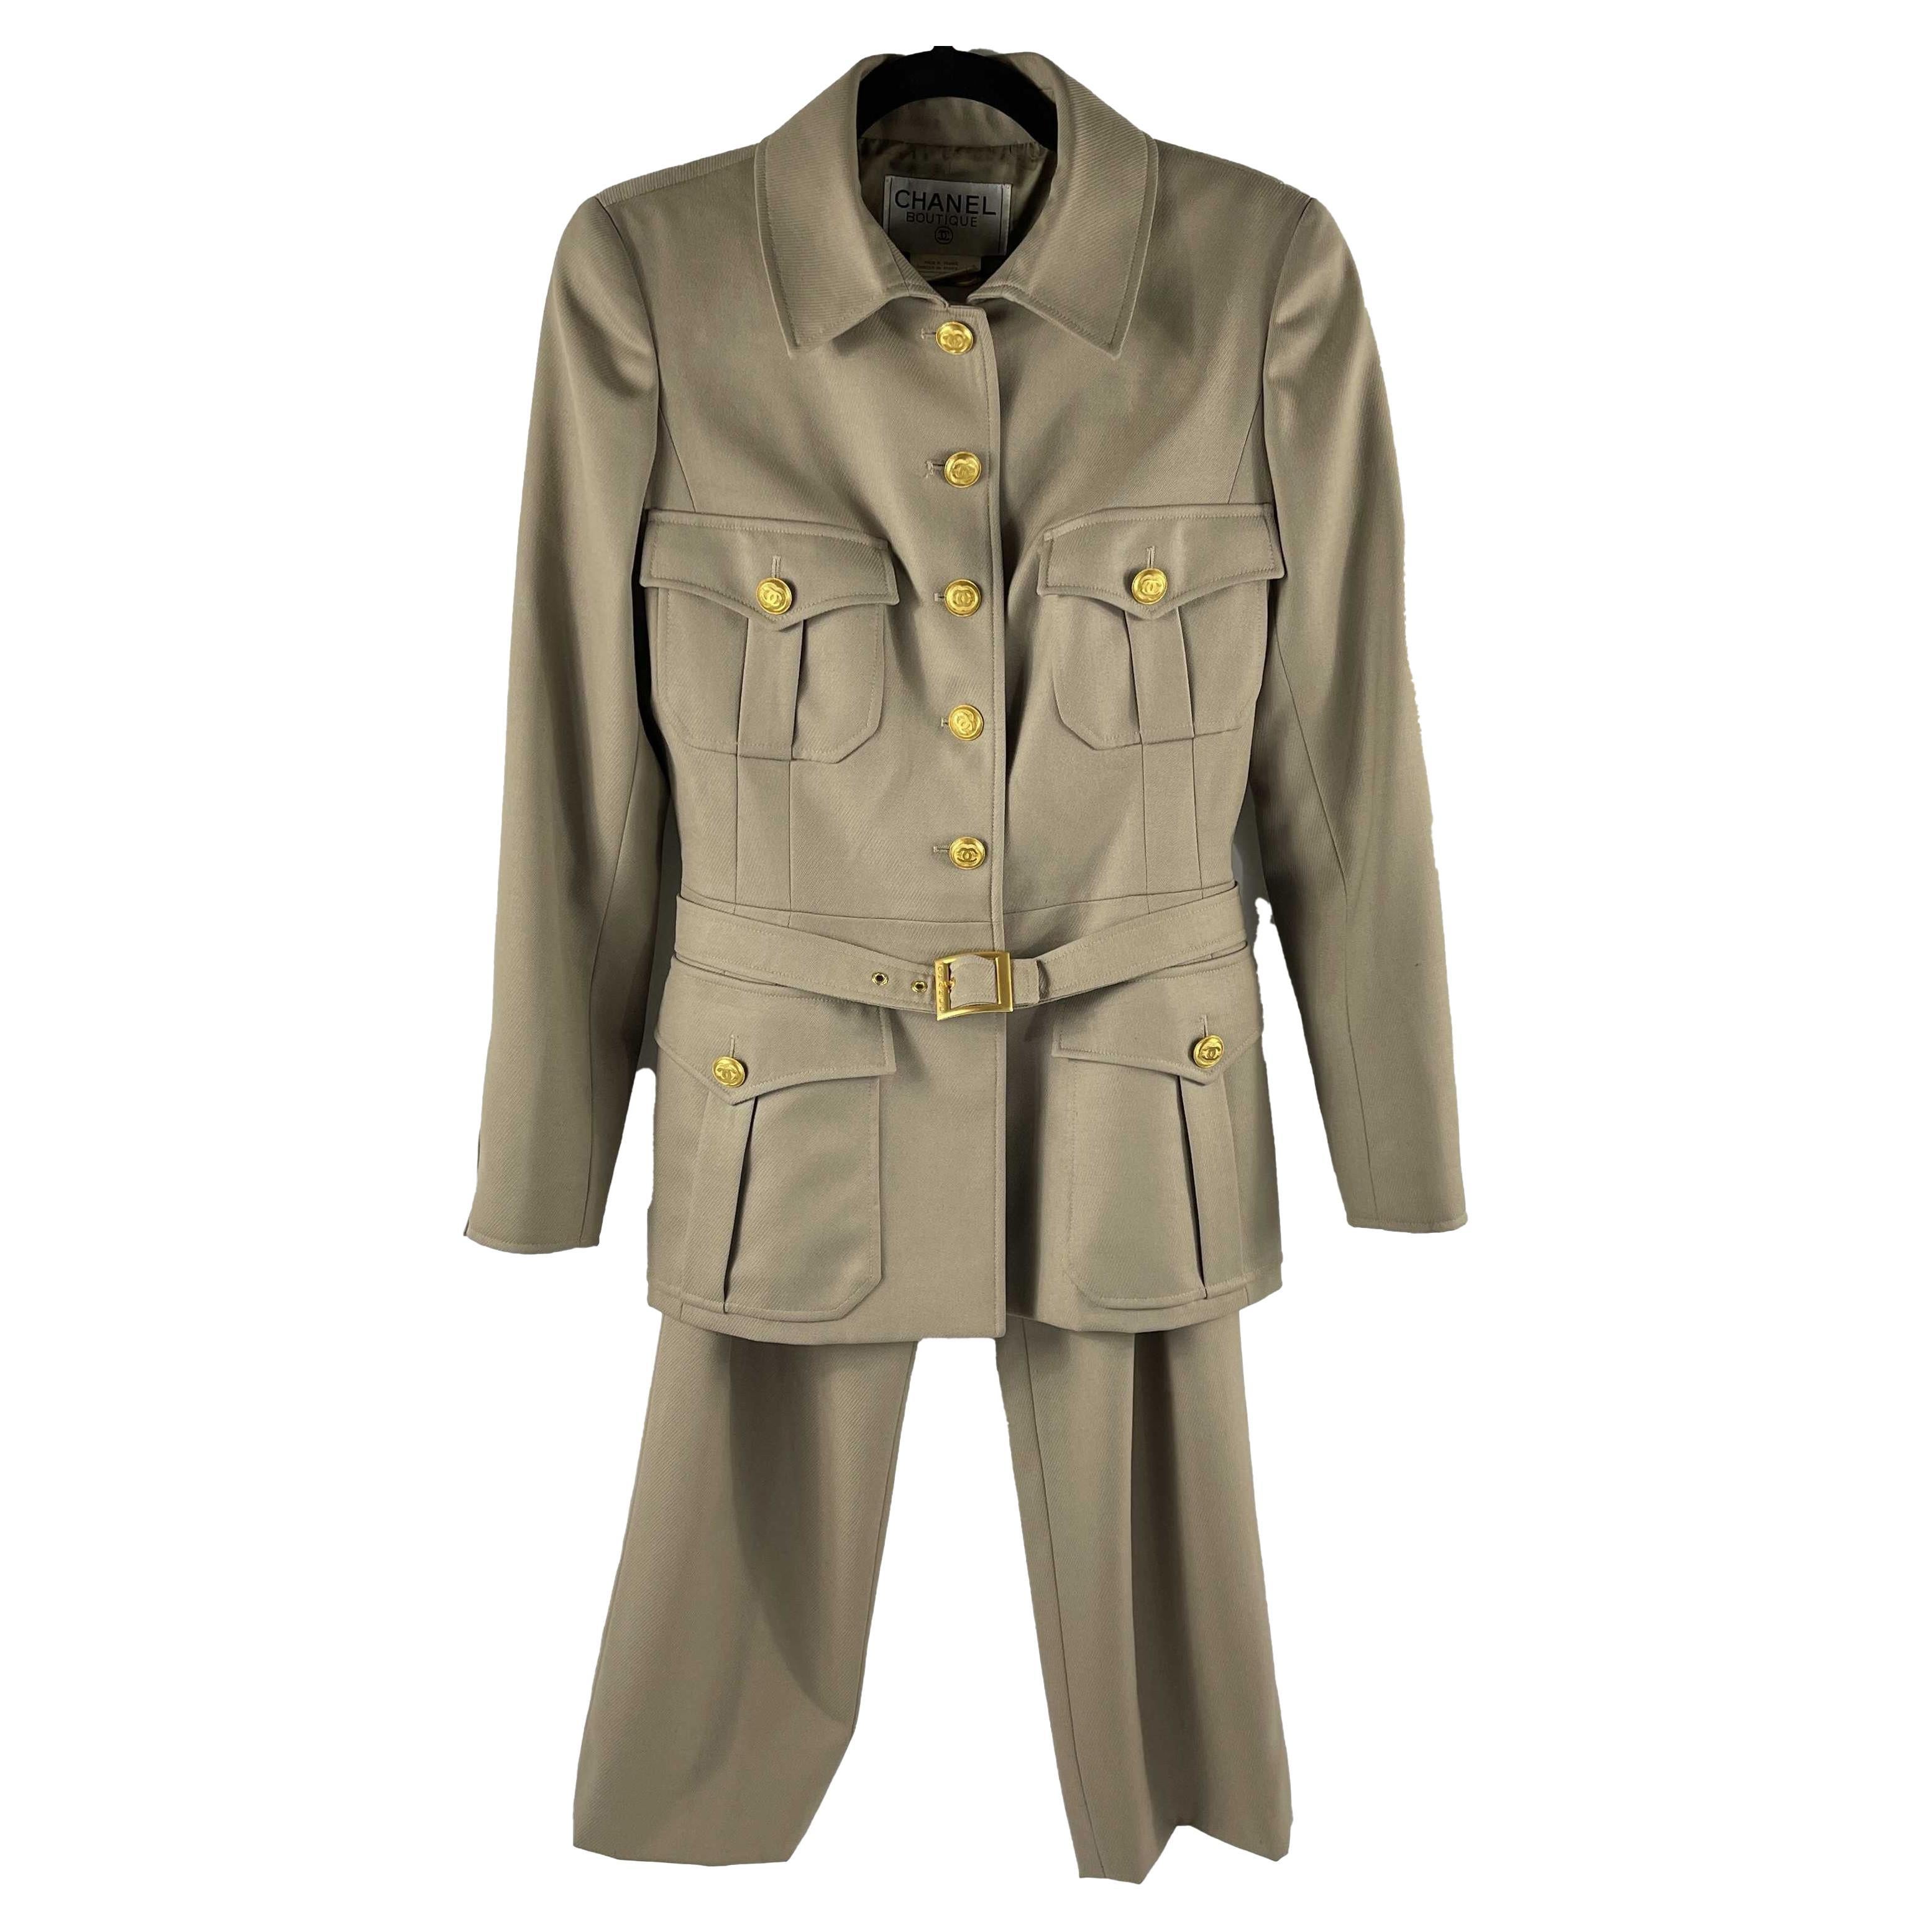 Ensemble veste et pantalon vintage CHANEL style militaire avec ceinture 96A CC 1996, 40 US 8